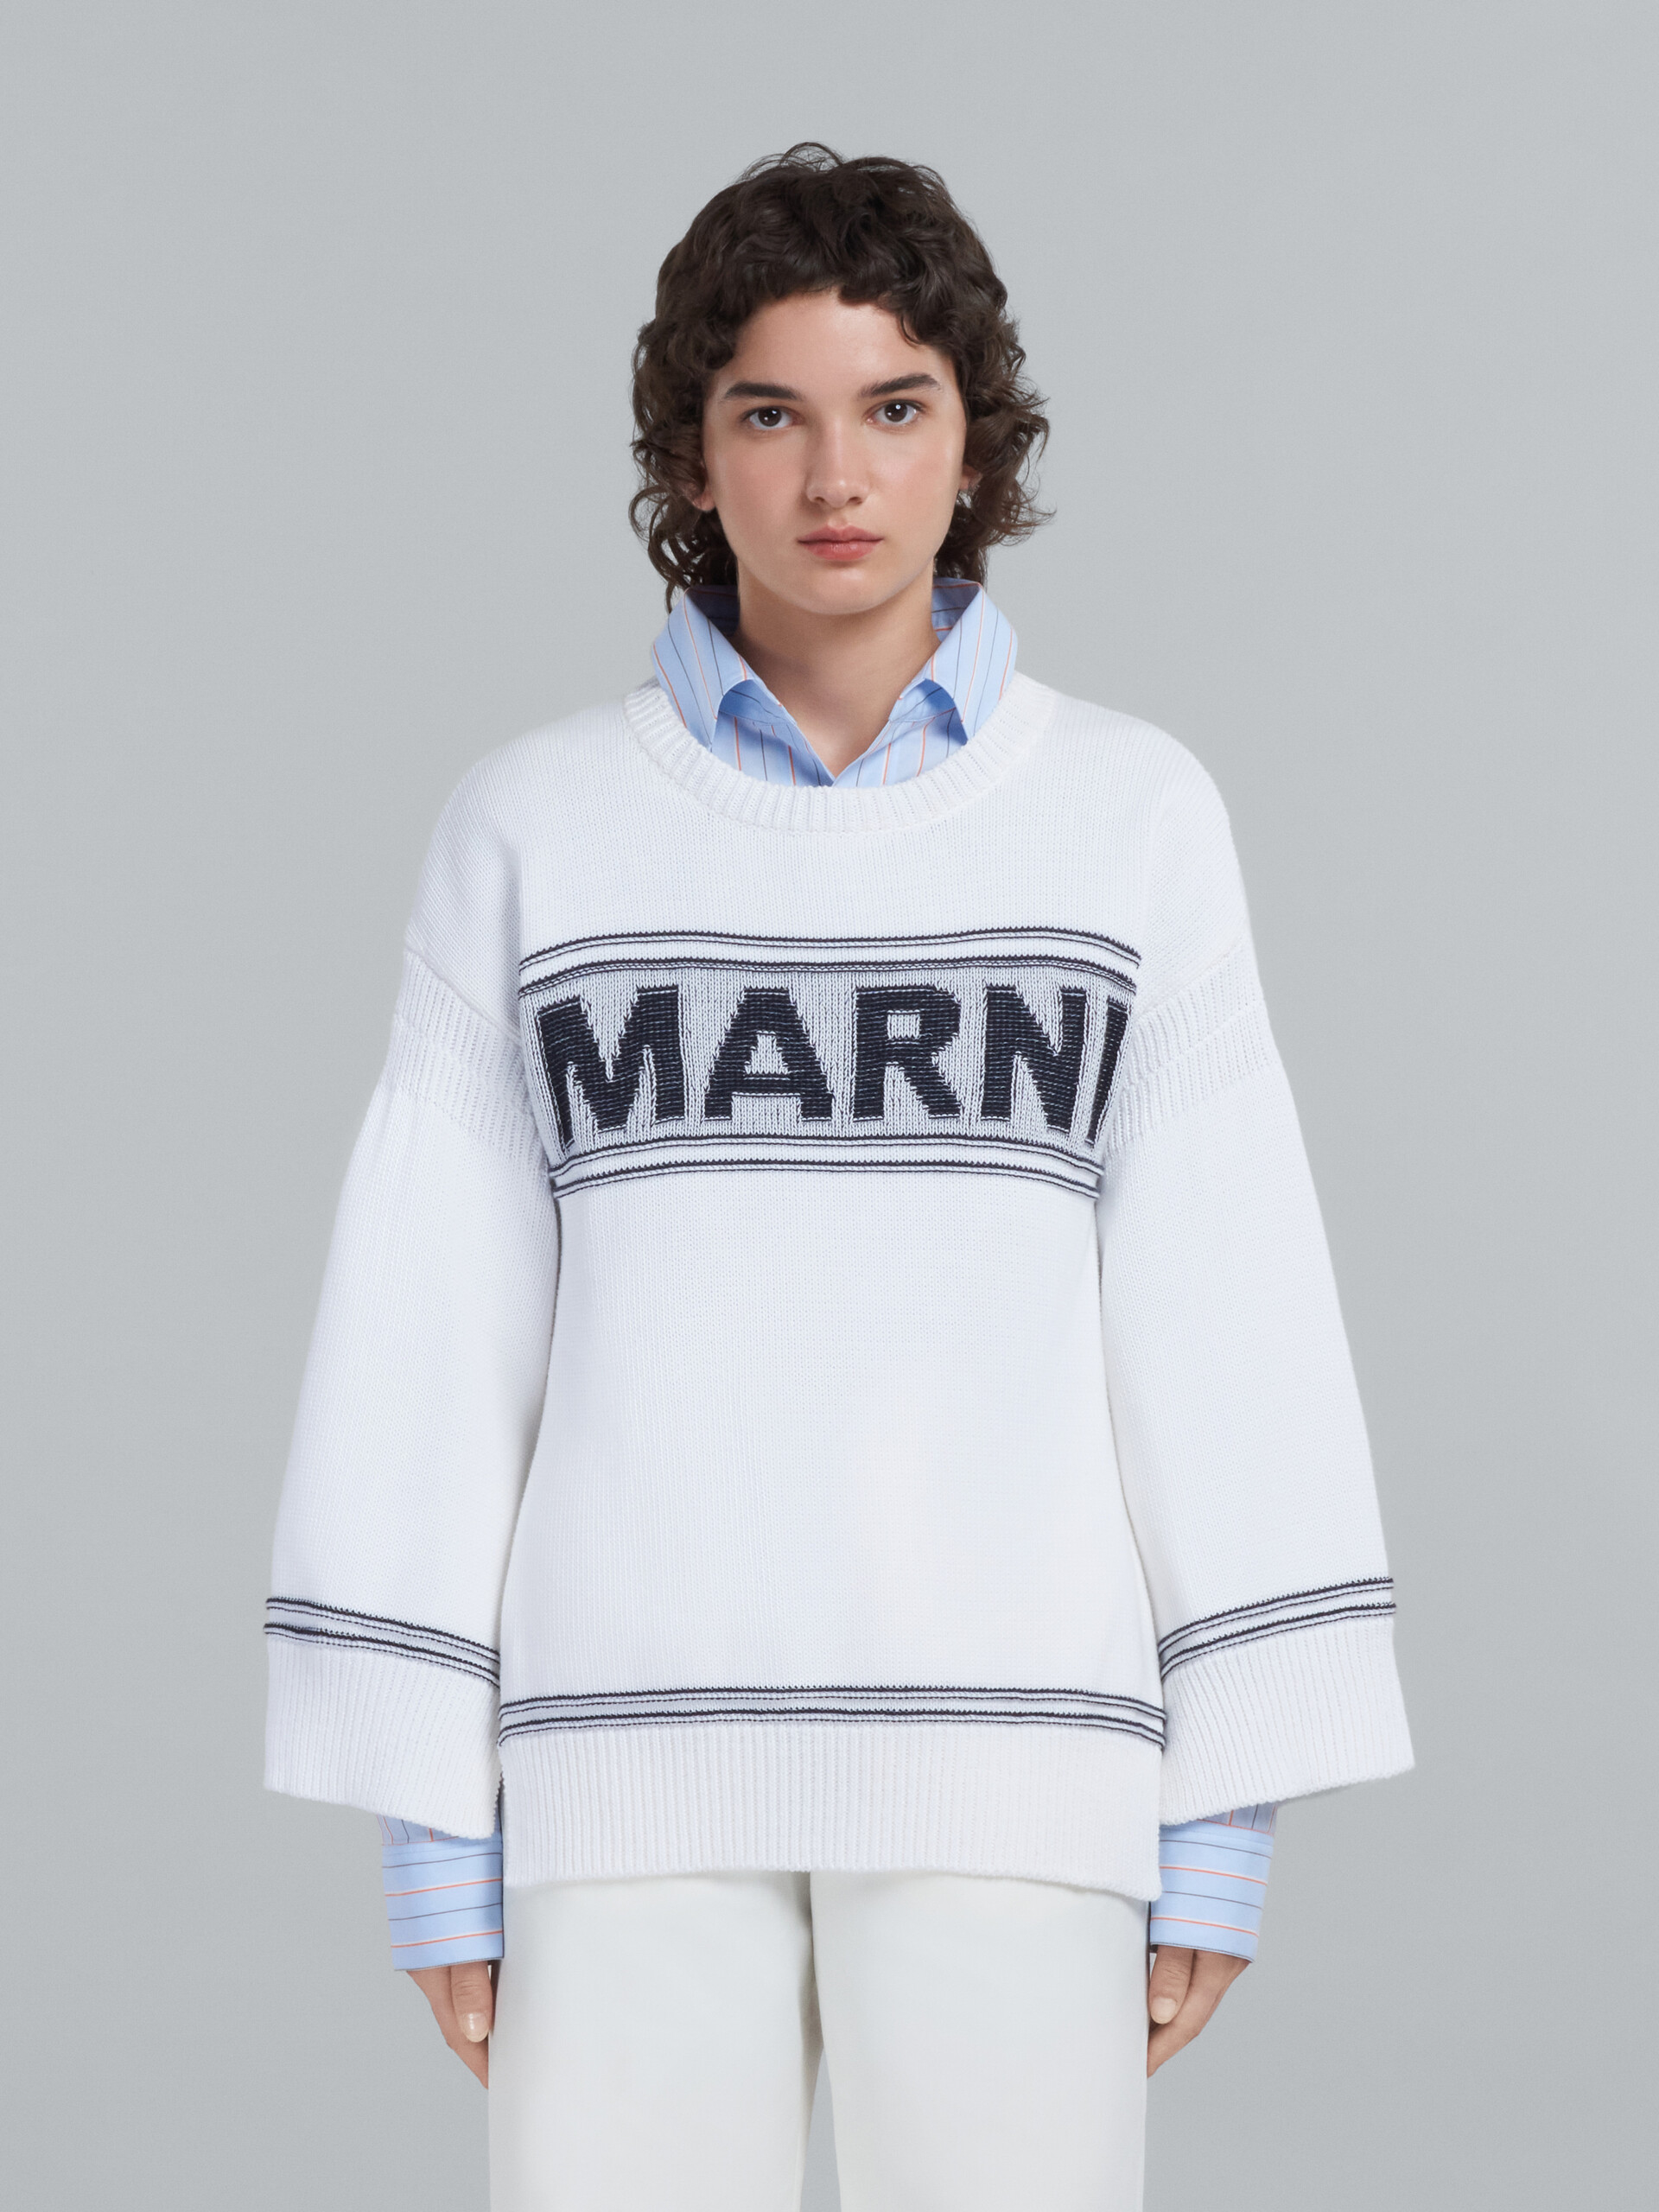 Marni Ladies Loose-fit Striped Jumper, Brand Size 44 (US Size 10)  GCMD0245Q0 UFZ762 RGB84 - Apparel - Jomashop